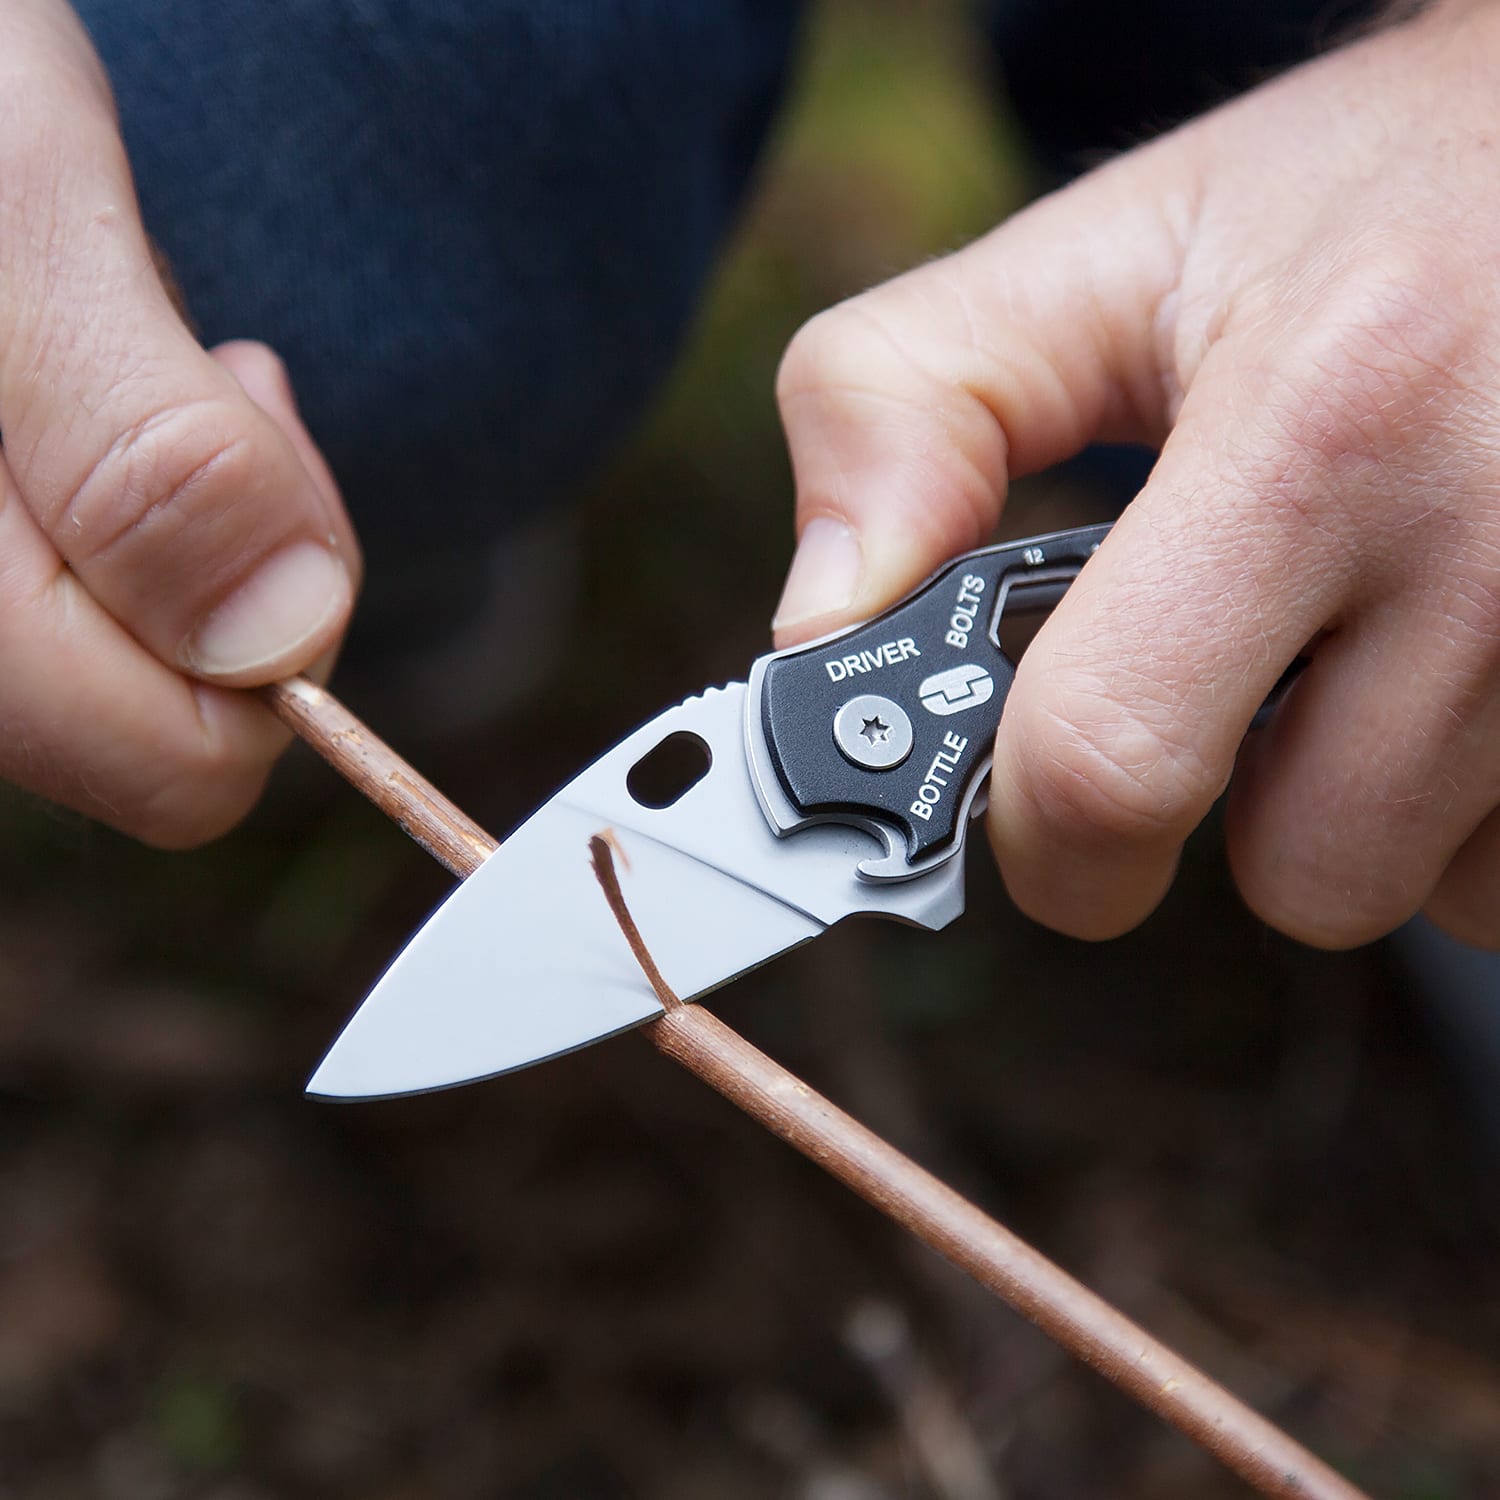 Ingredient-Examining Blades : Smart Knife